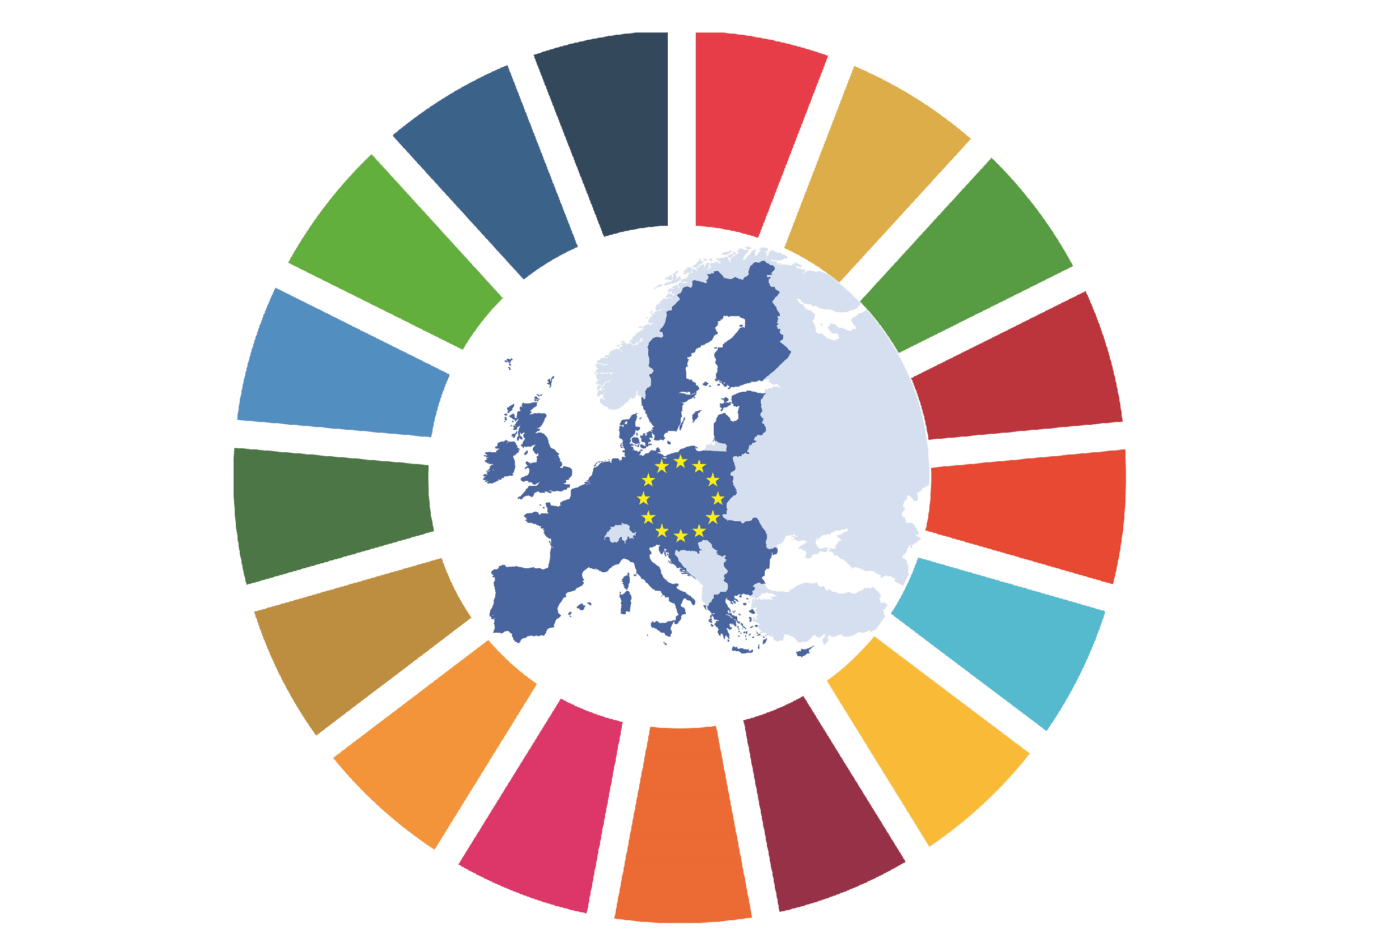 Die 17 Ziele für eine nachhaltige Entwicklung im Kontext der Europawahl – Beiträge der Parteien. Bild: eigenes Material © Rat für Nachhaltige Entwicklung